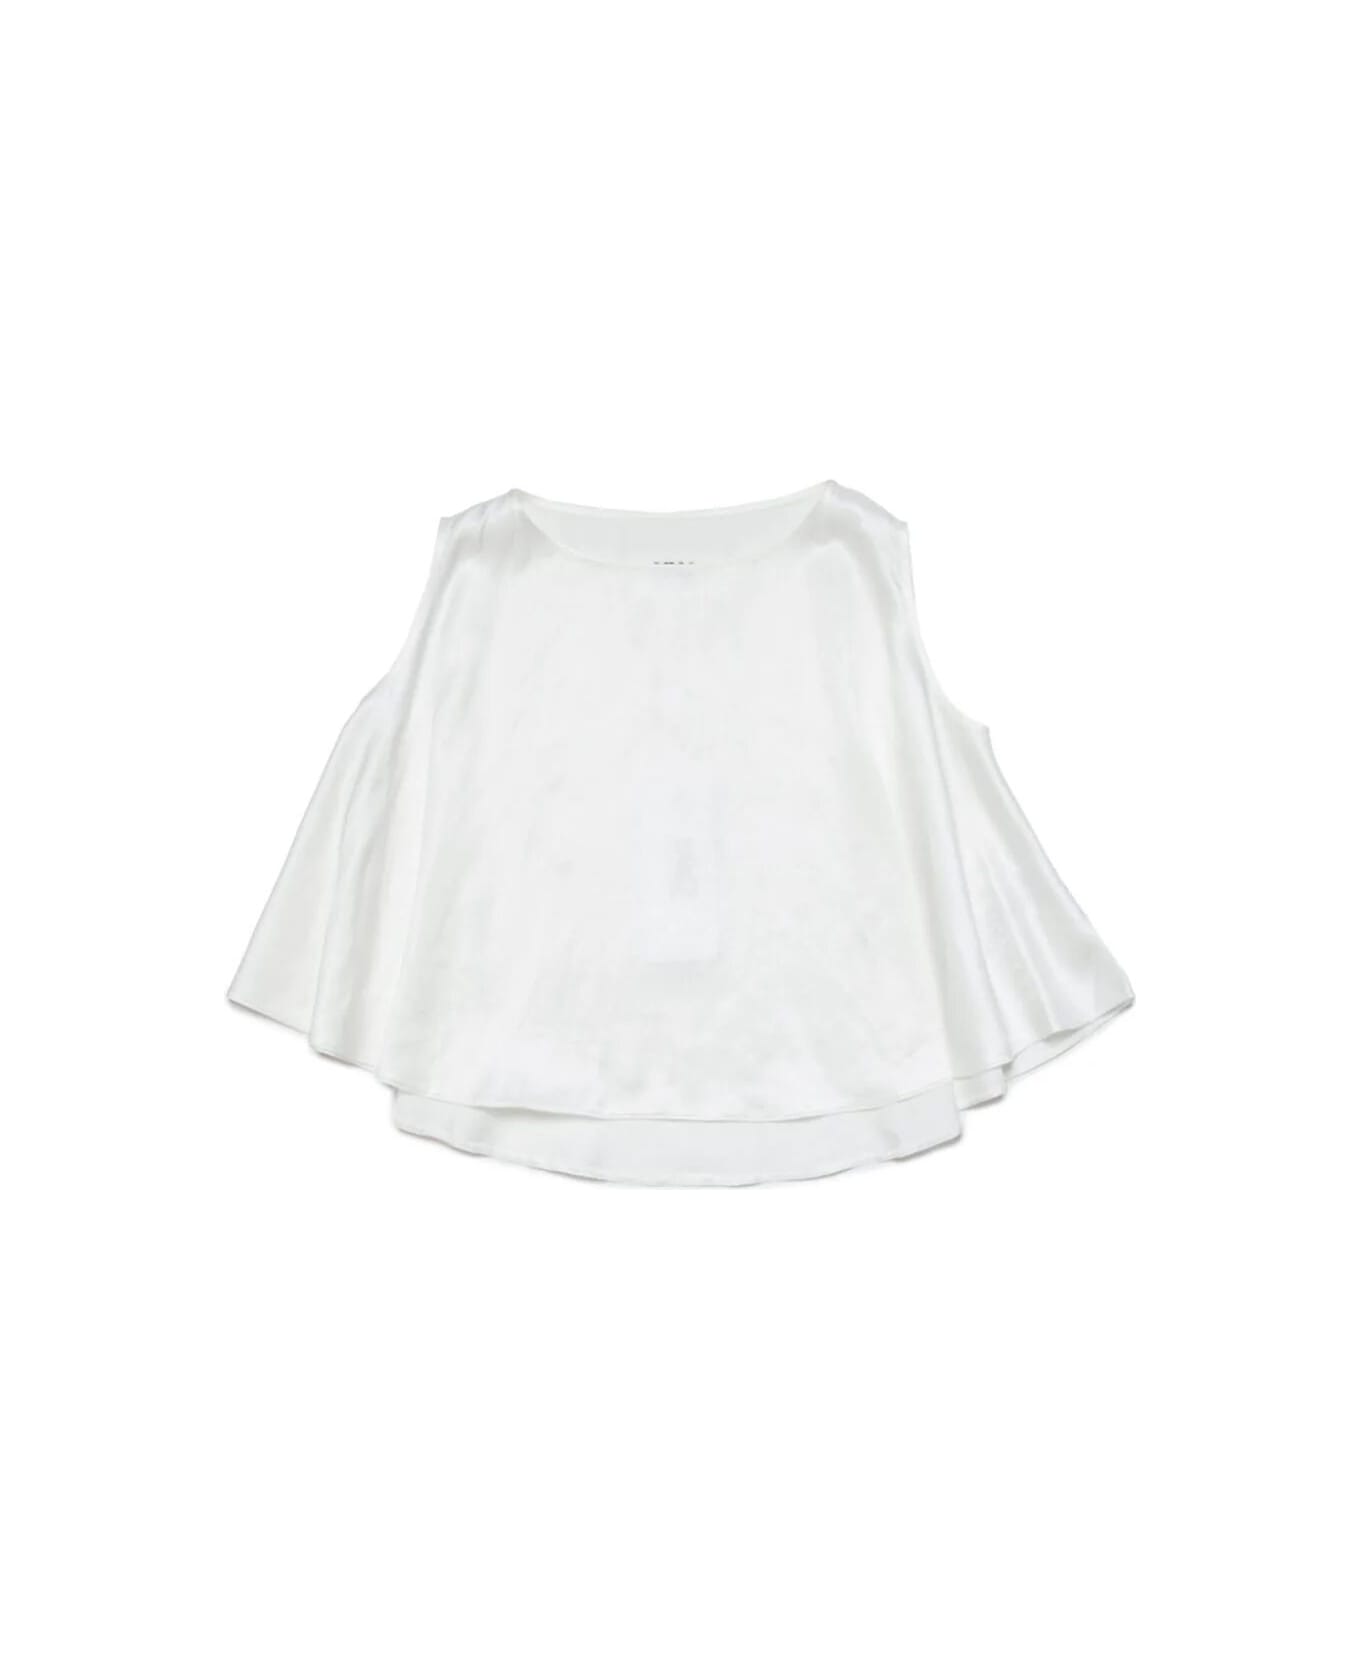 MM6 Maison Margiela Shirt - White シャツ